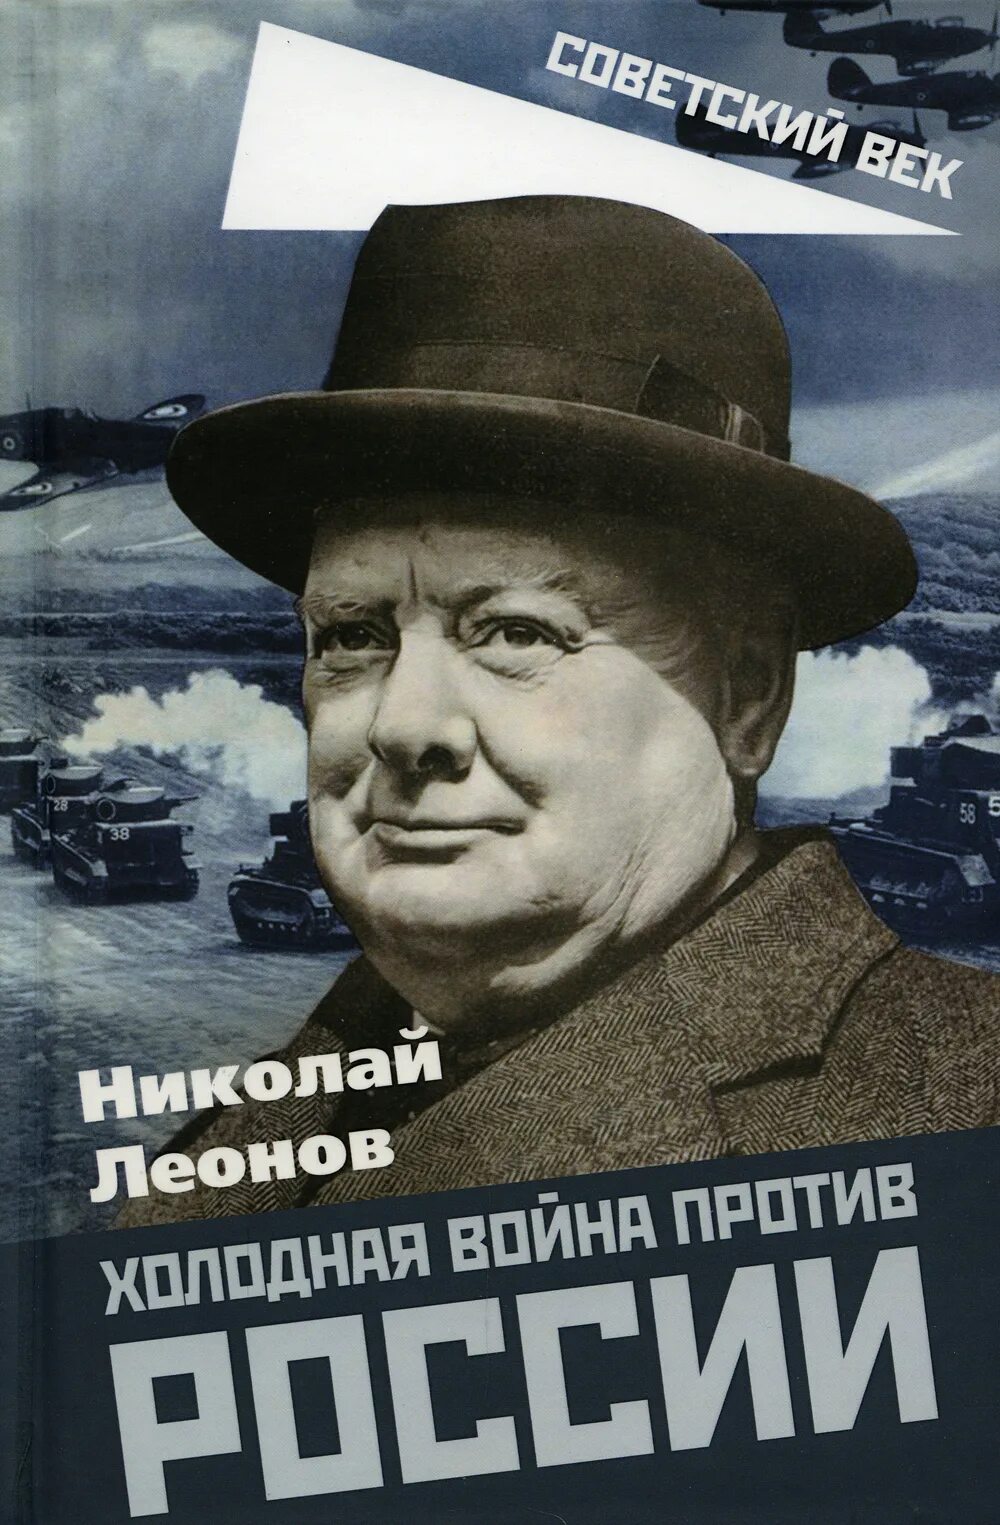 Книга советский век. Книги про холодную войну.